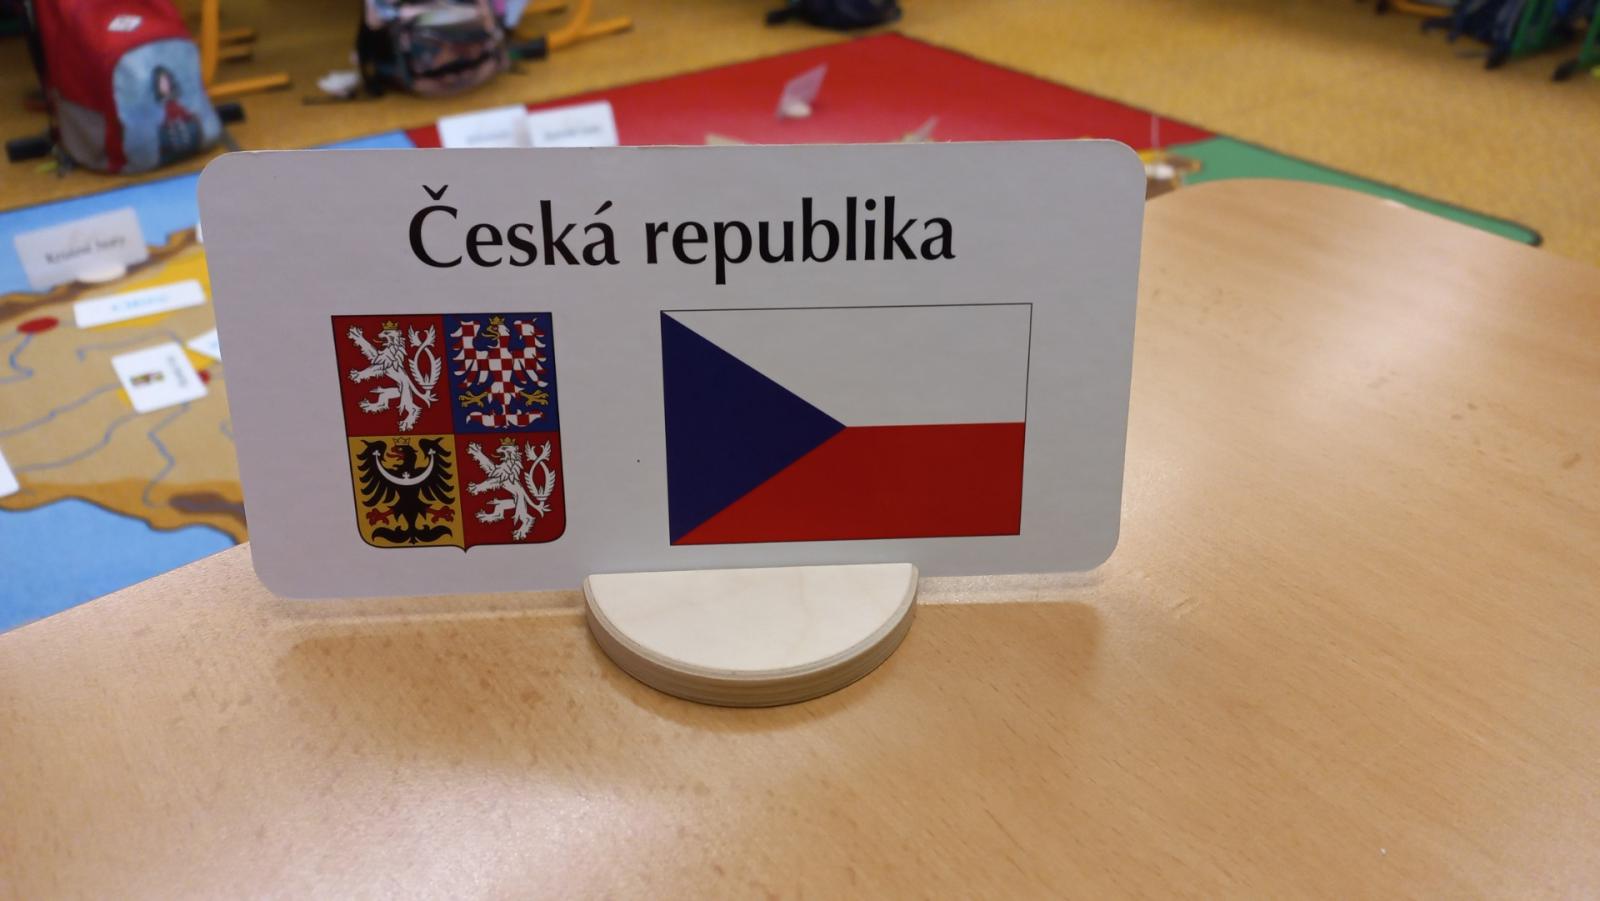 Skupinové vyučování o České republice